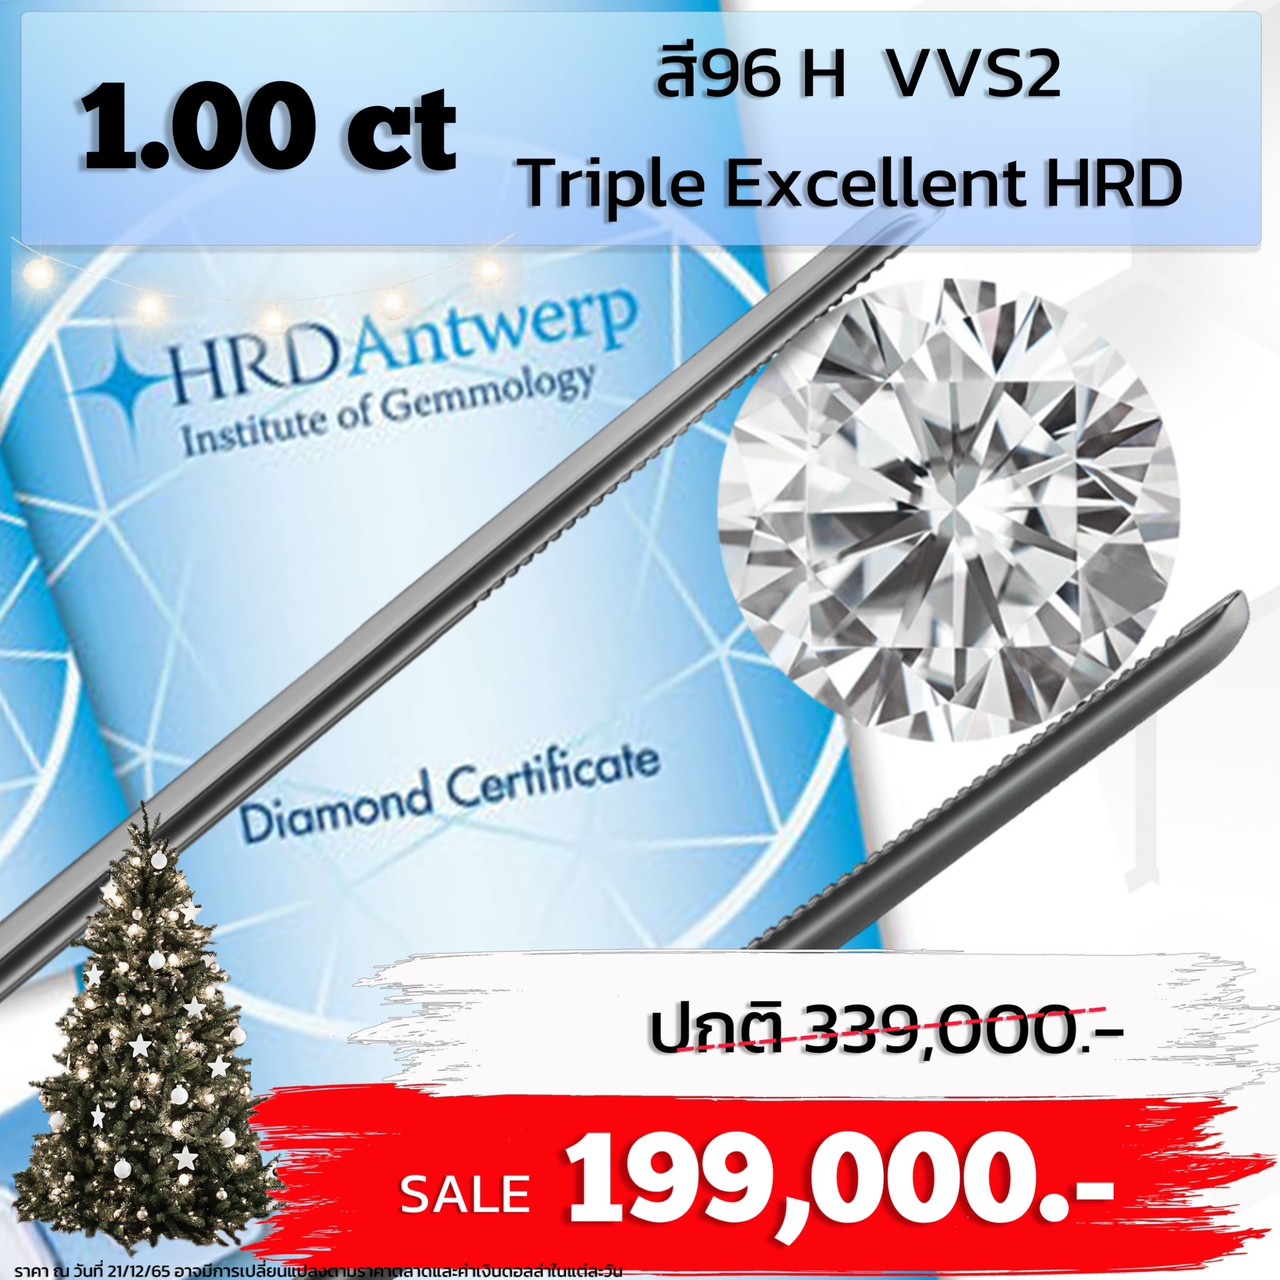 [27277] 1.00 carat H color VVS2 3EX HRD Discount 199,000